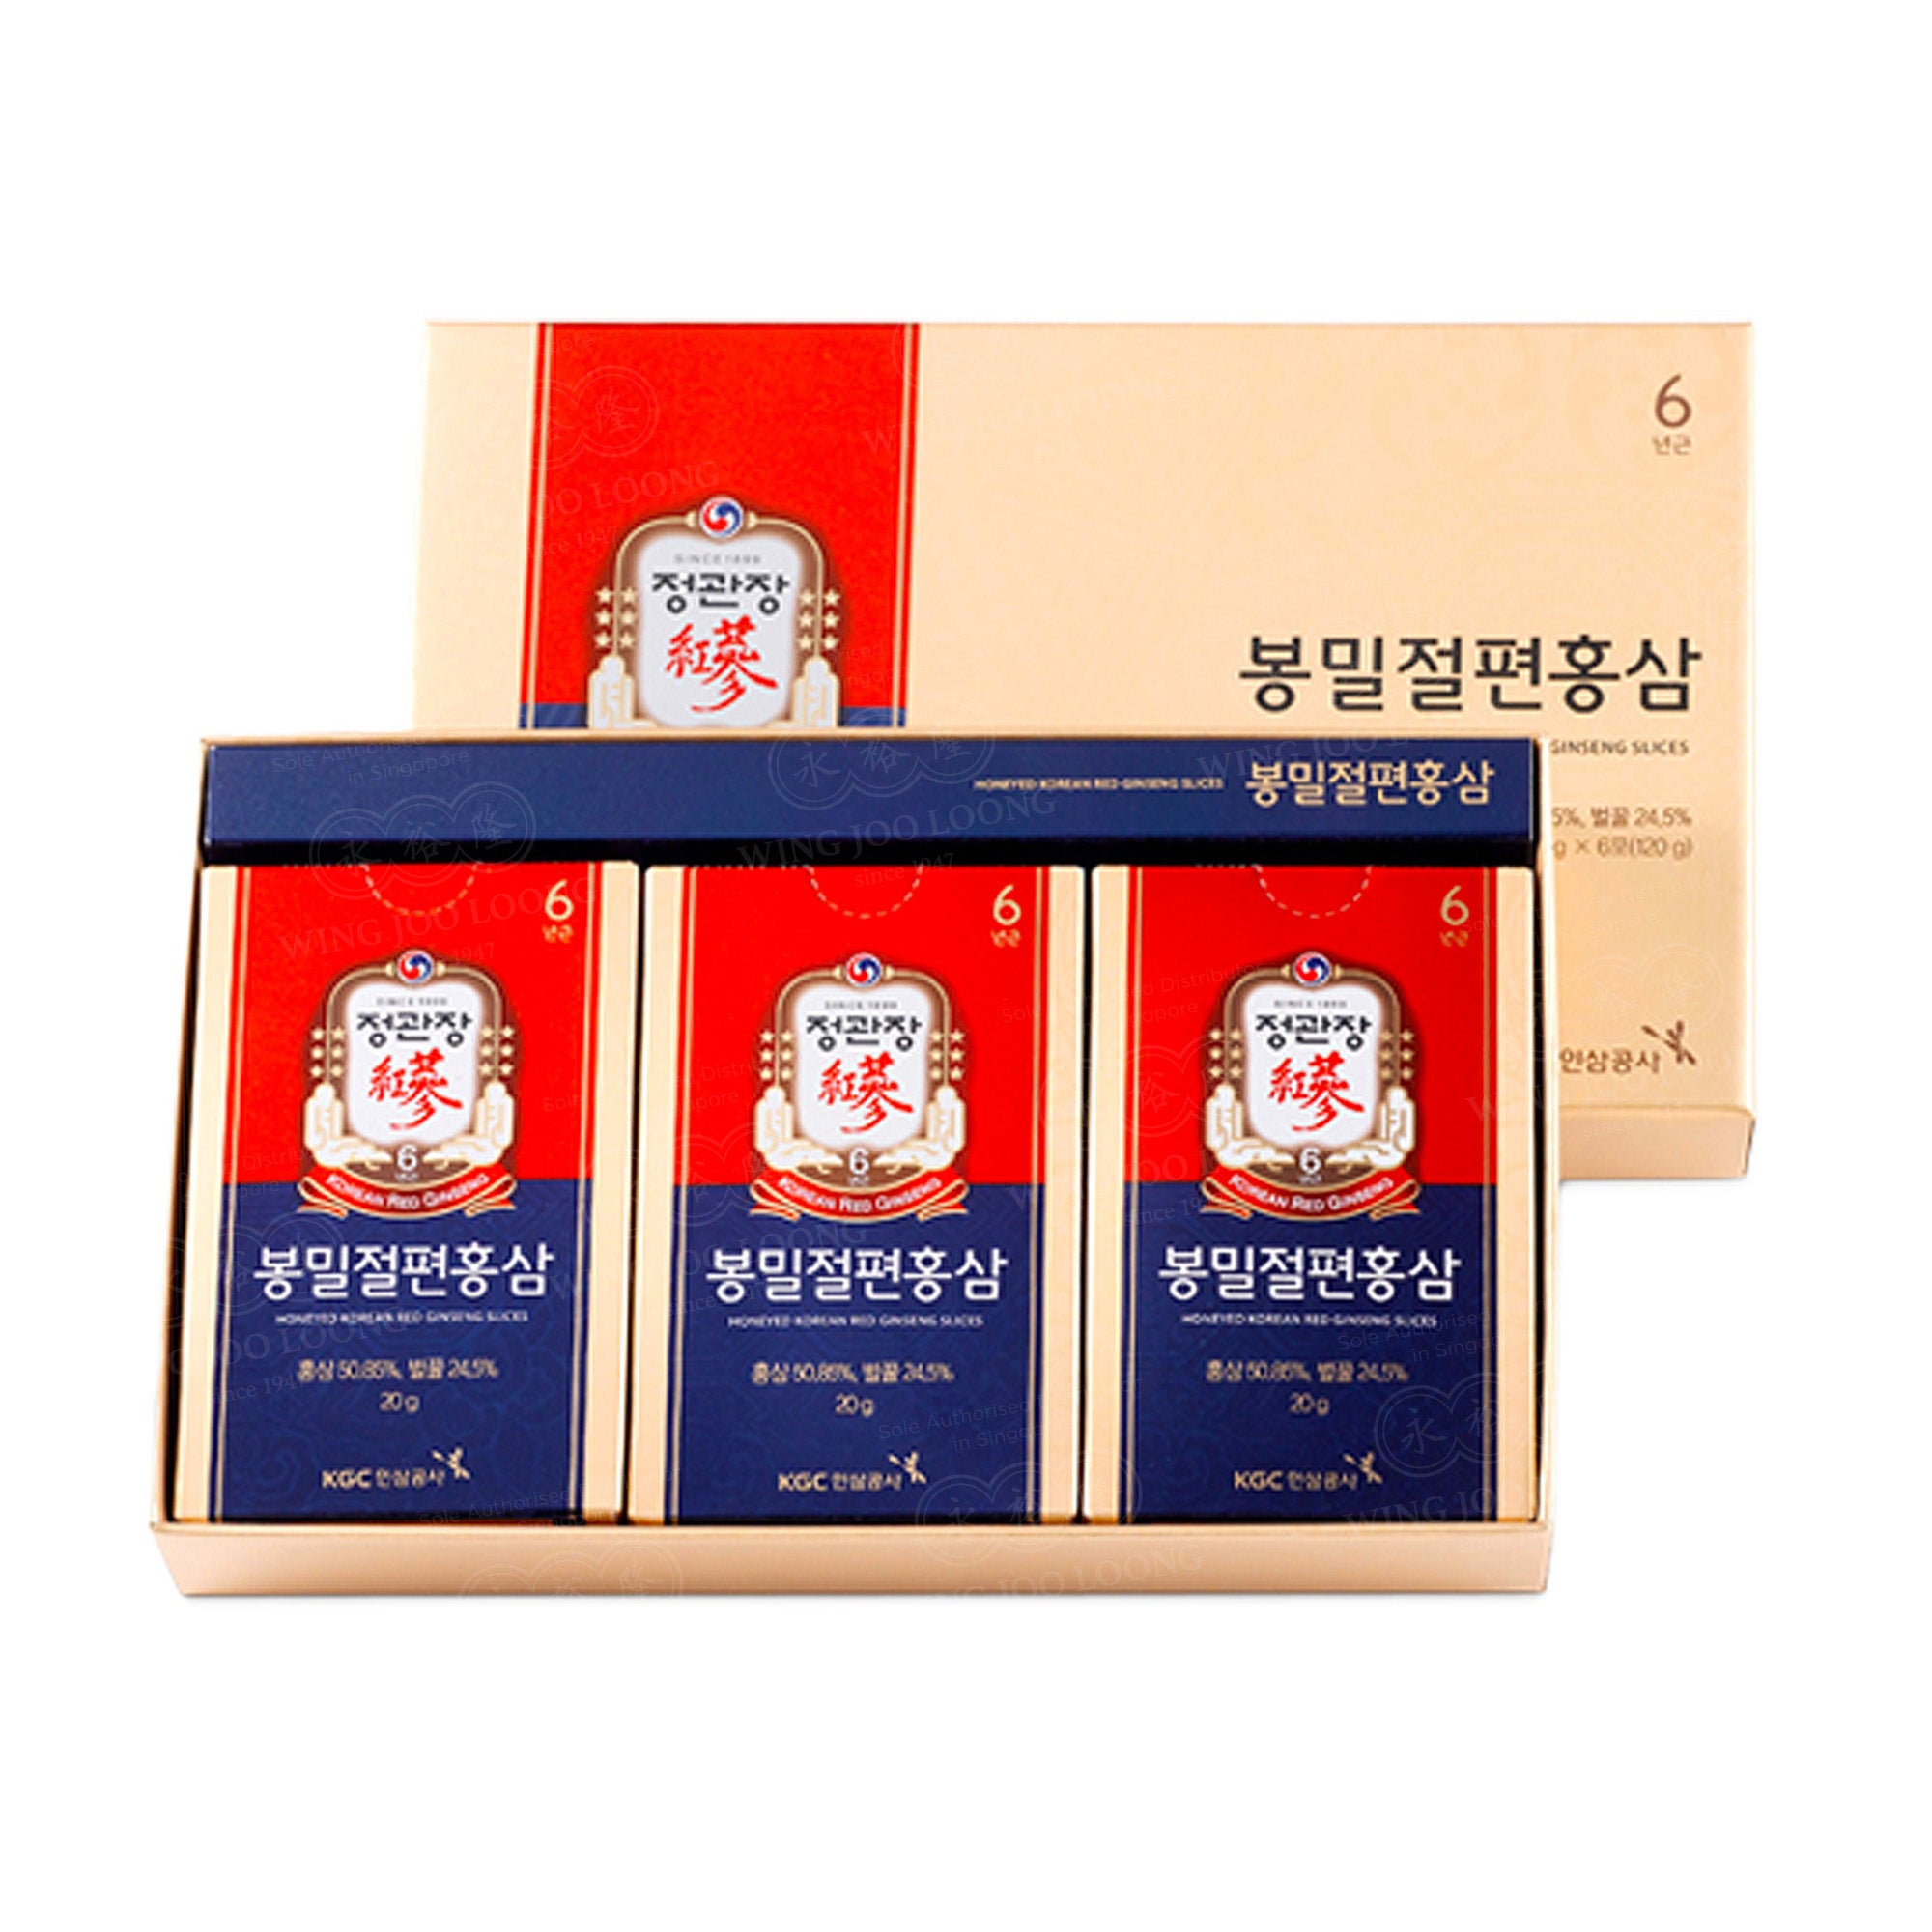 Cheong Kwan Jang Korean Red Ginseng Honeyed Slices 高丽参蜂蜜切片